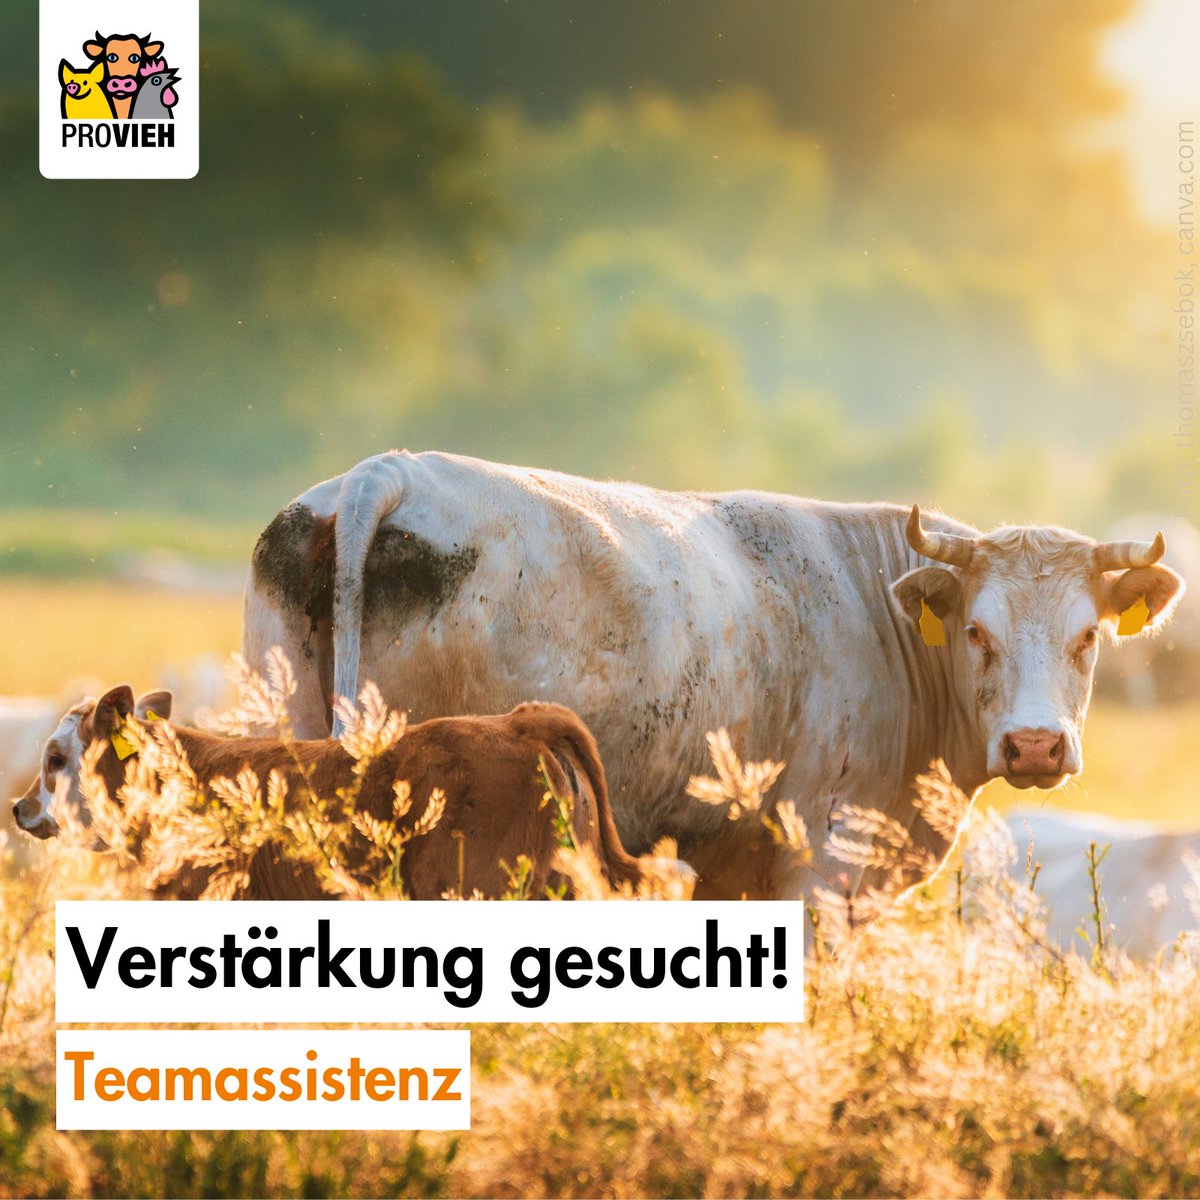 ✨Unser #Team braucht Verstärkung!✨

👉 Du möchtest dich beruflich für den #Nutztierschutz einsetzen & Teil eines jungen, dynamischen Teams in einer #NGO werden?

👉 Dann bewirb dich bei uns für die: Teamassistenz!

👉Infos: provieh.de/helfen/jobs-un… 

Wir freuen uns auf dich!🧡